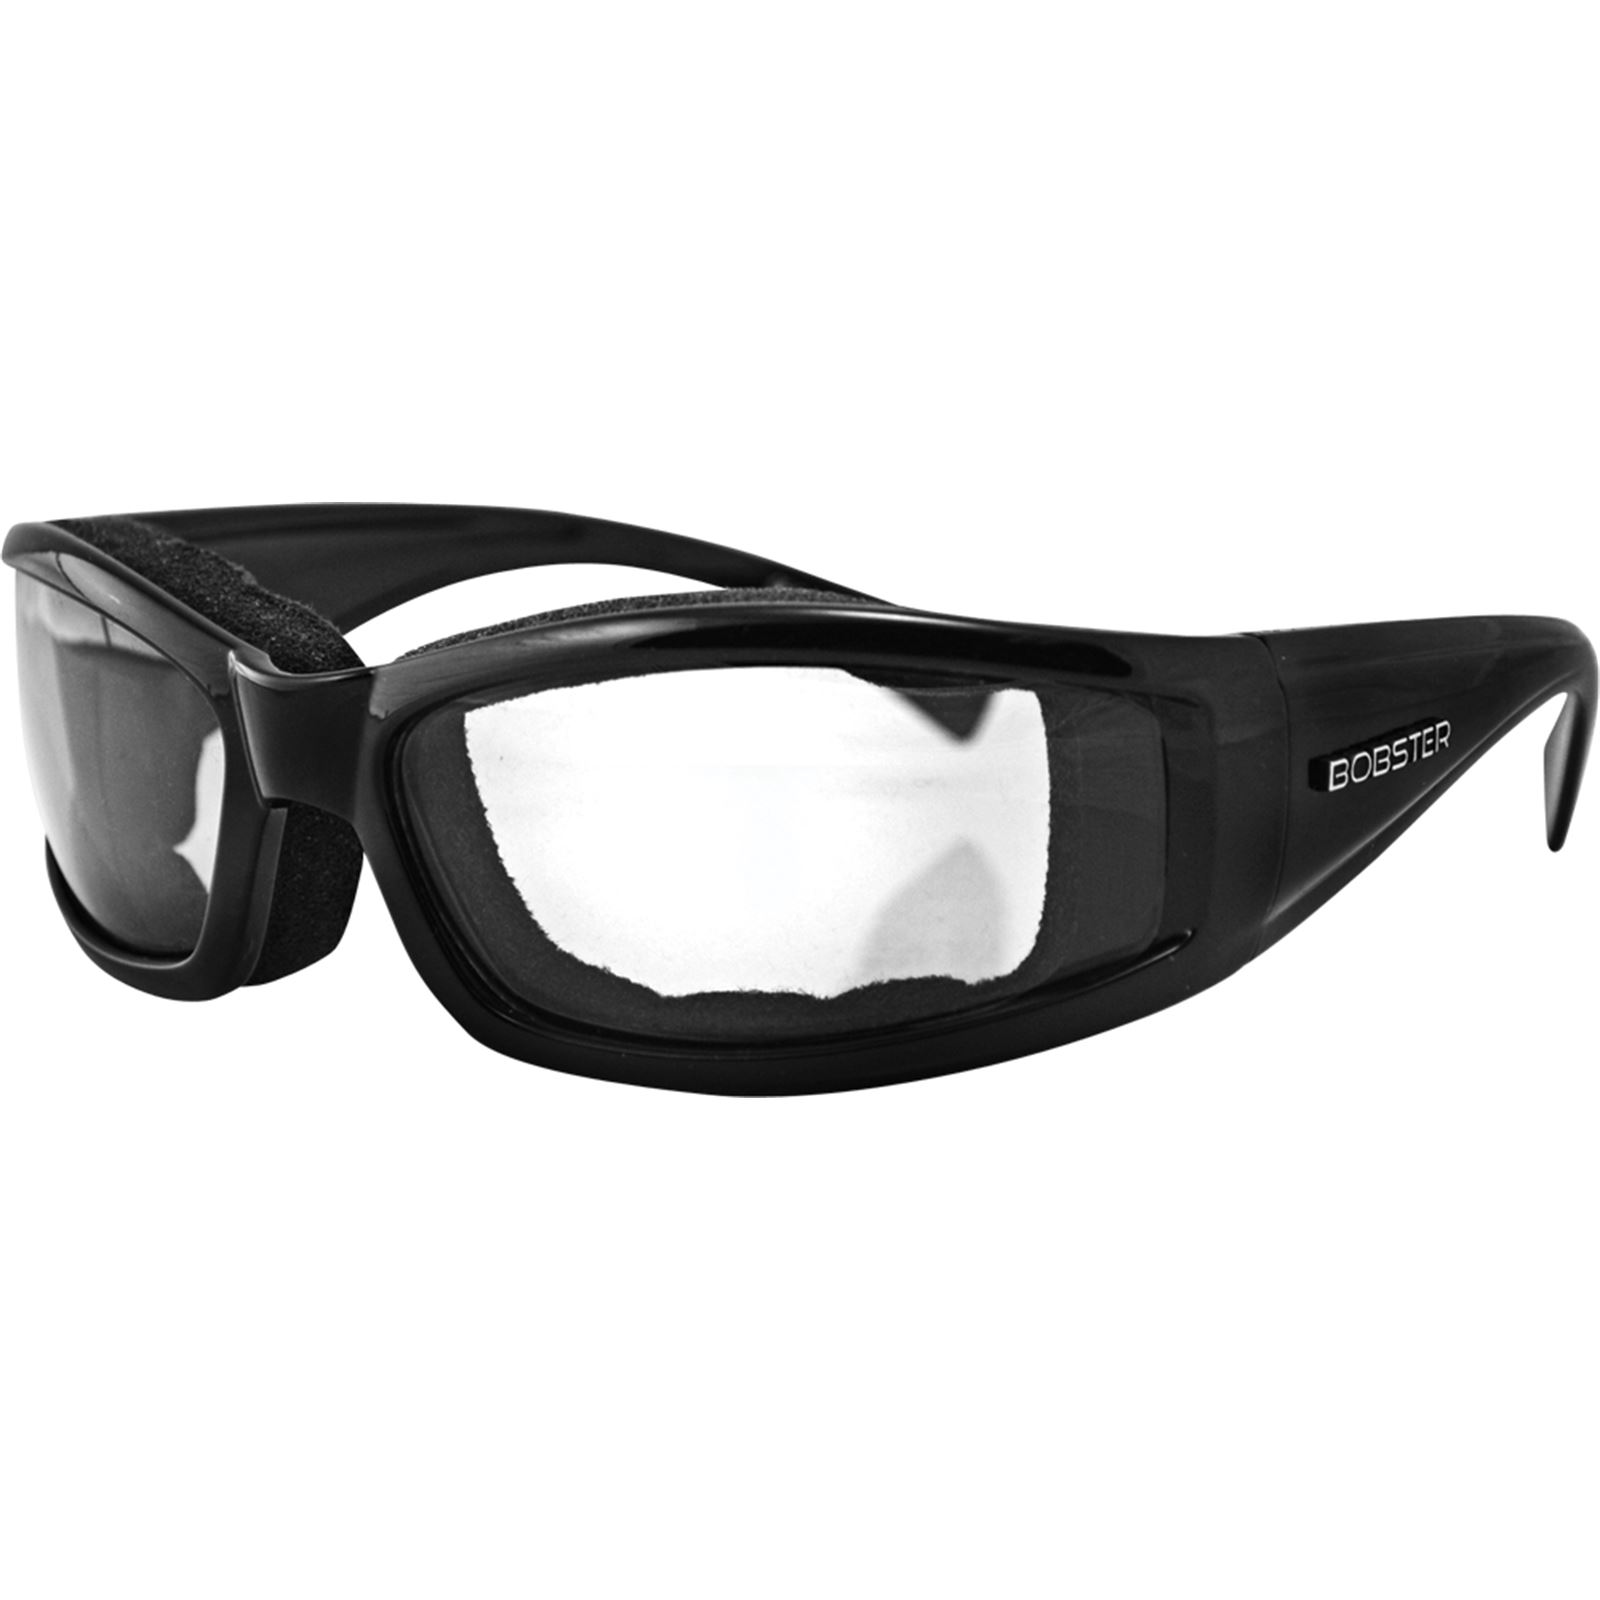 Bobster Invader Sunglasses Black Frame